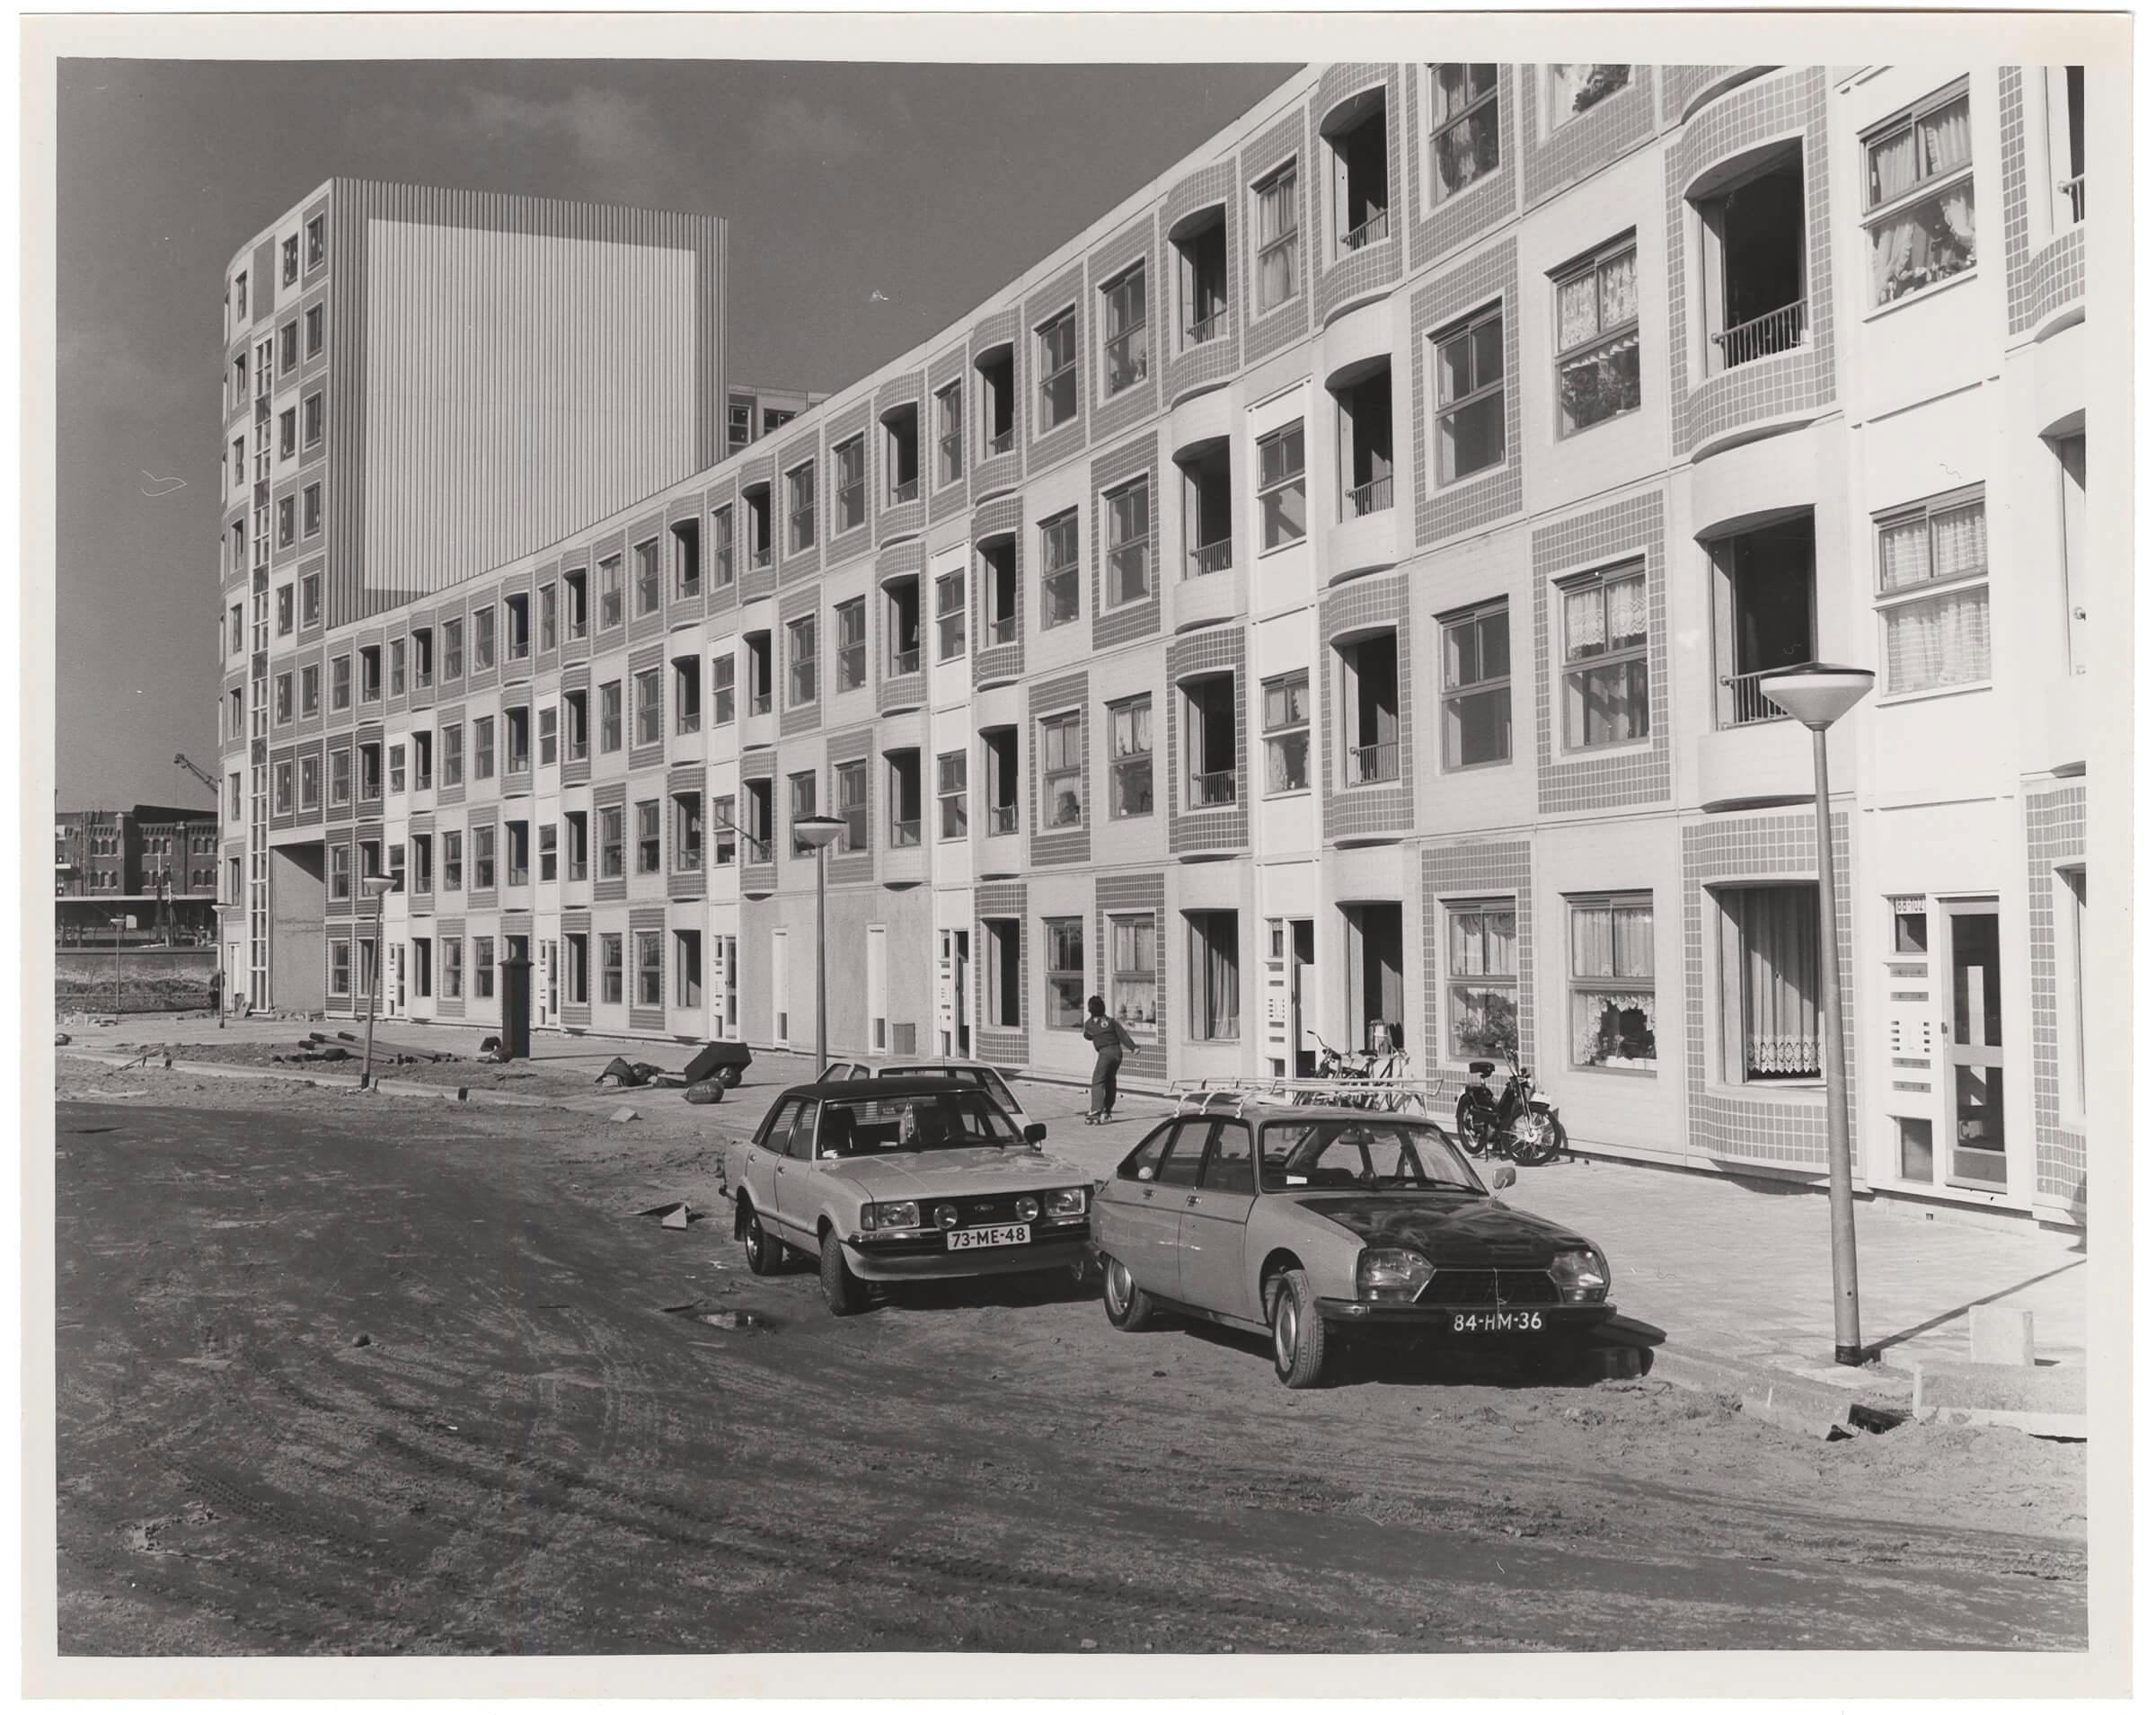 Carel Weeber. Housing Peperklip, Rotterdam, 1979-82. Collection Het Nieuwe Instituut